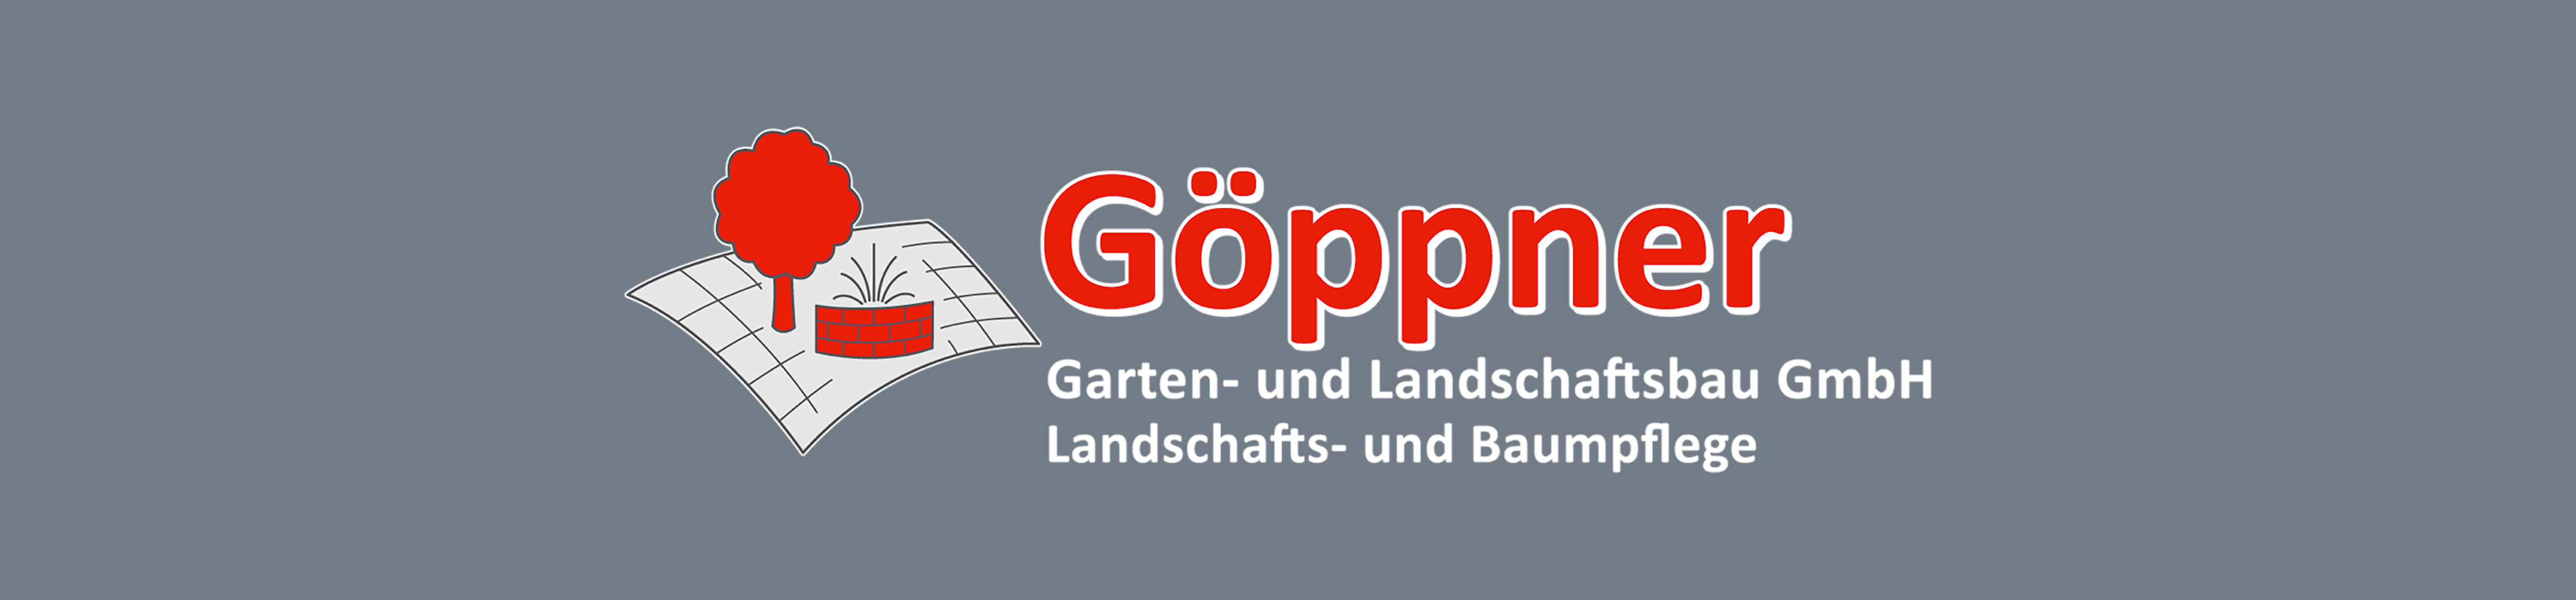 Göppner Garten- und Landschaftsbau GmbH in Umkirch